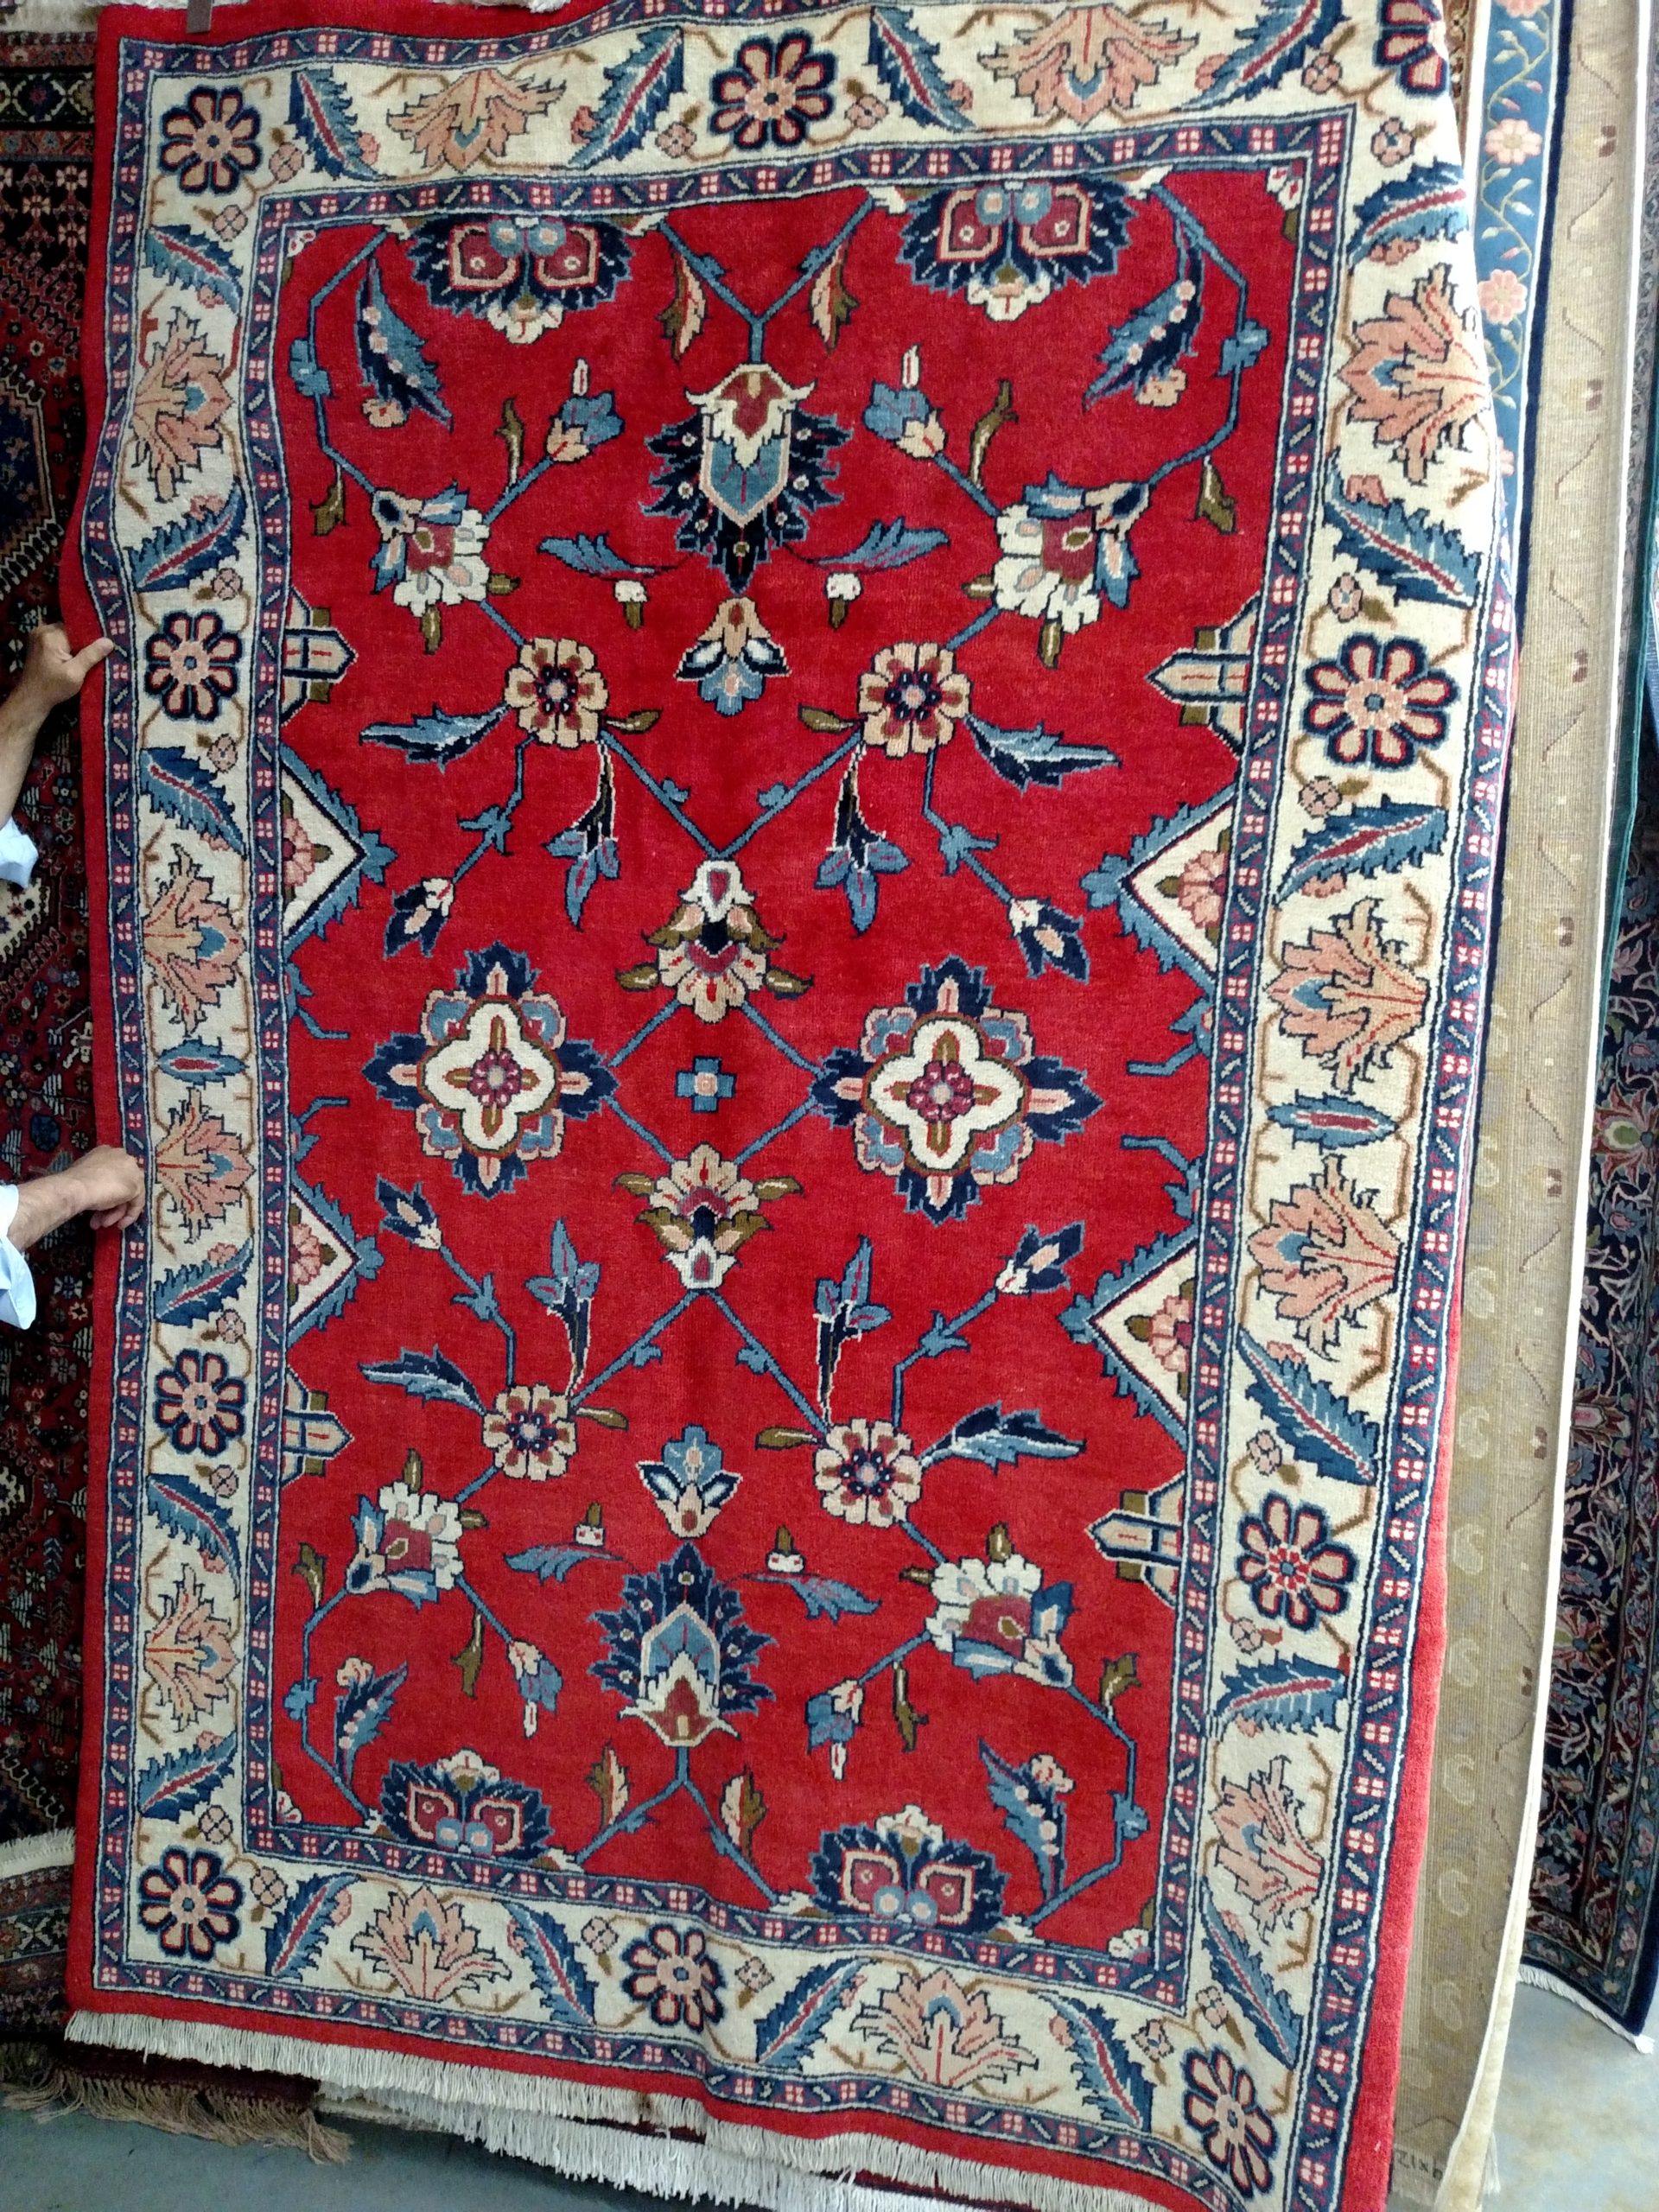 Mahal Persian Rug